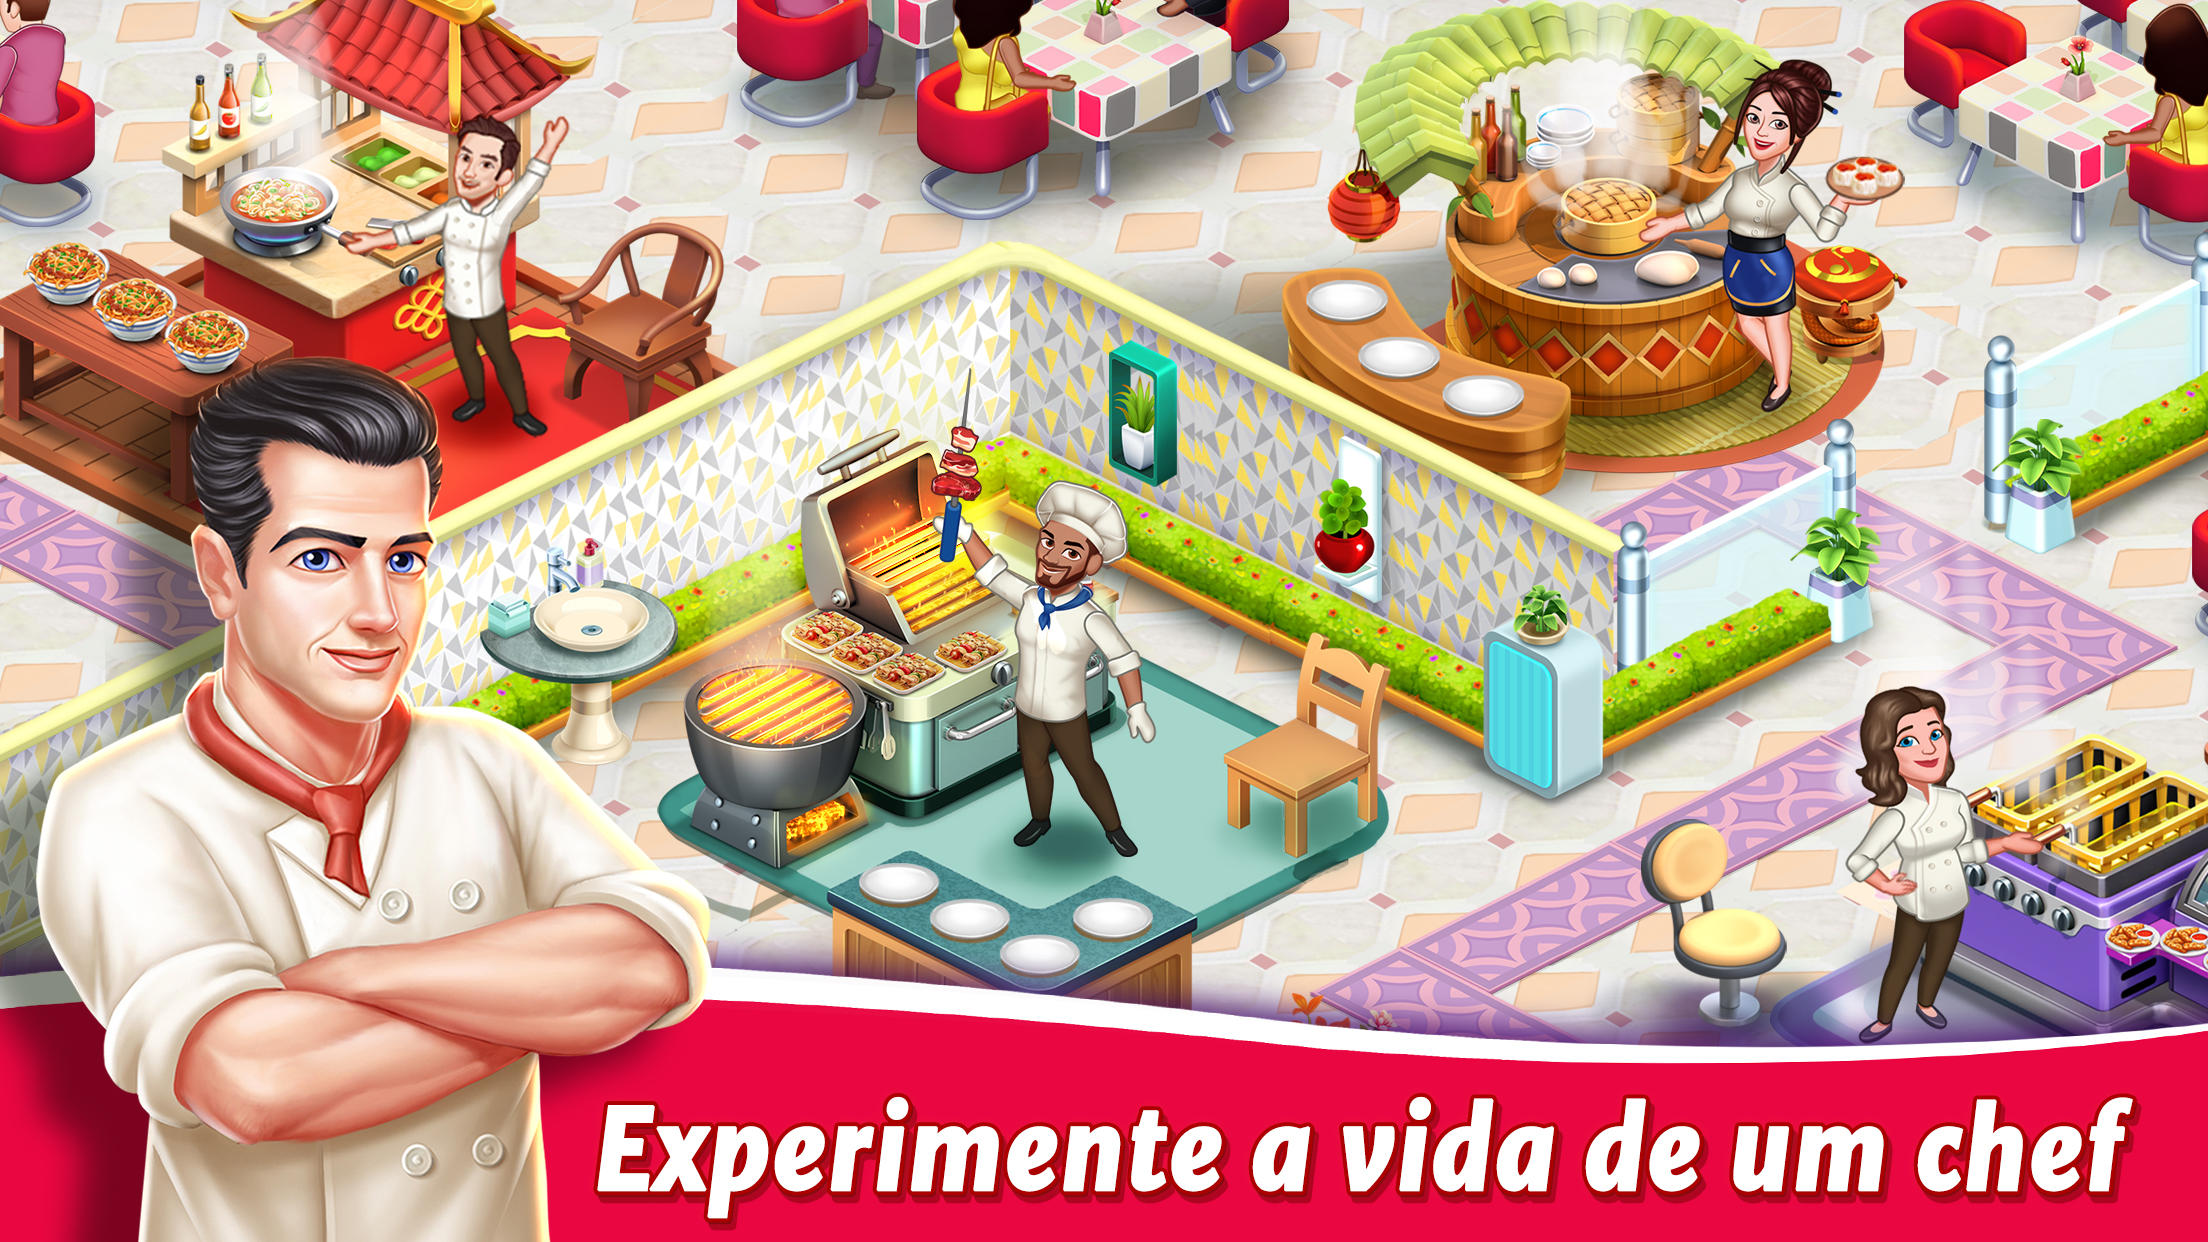 Screenshot 1 of Star Chef 2: Jogo de Cozinhar 1.7.2